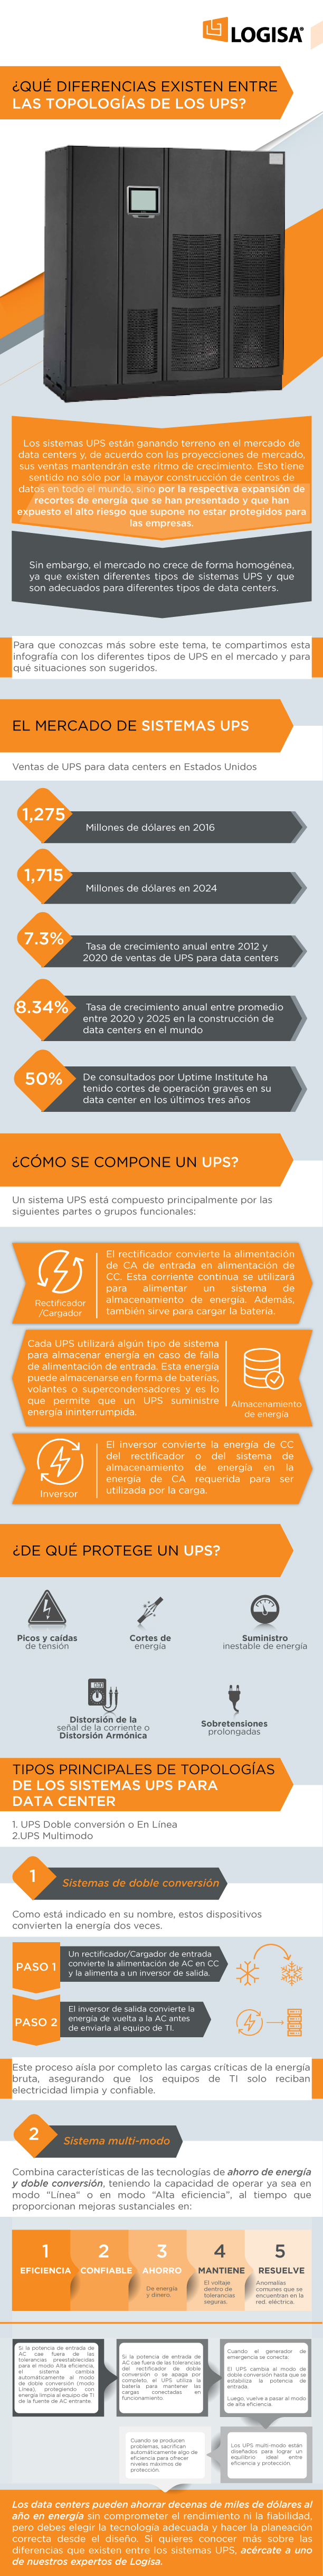 Infografía-Topologias-UPS